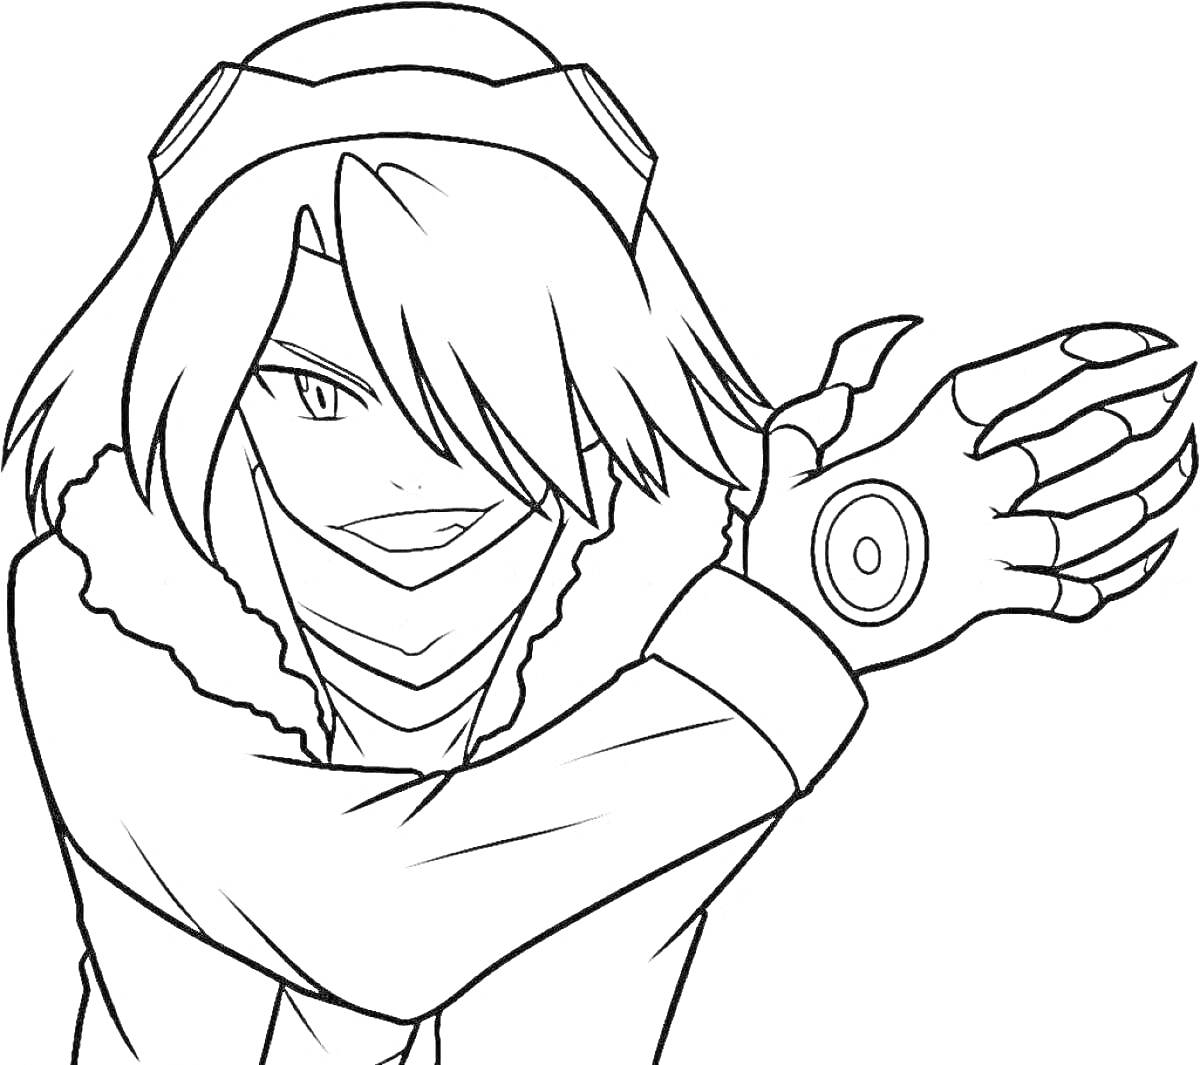 Аниме персонаж-убийца в плаще с меховым воротником, героем с длинными волосами, тайным оружием на руке